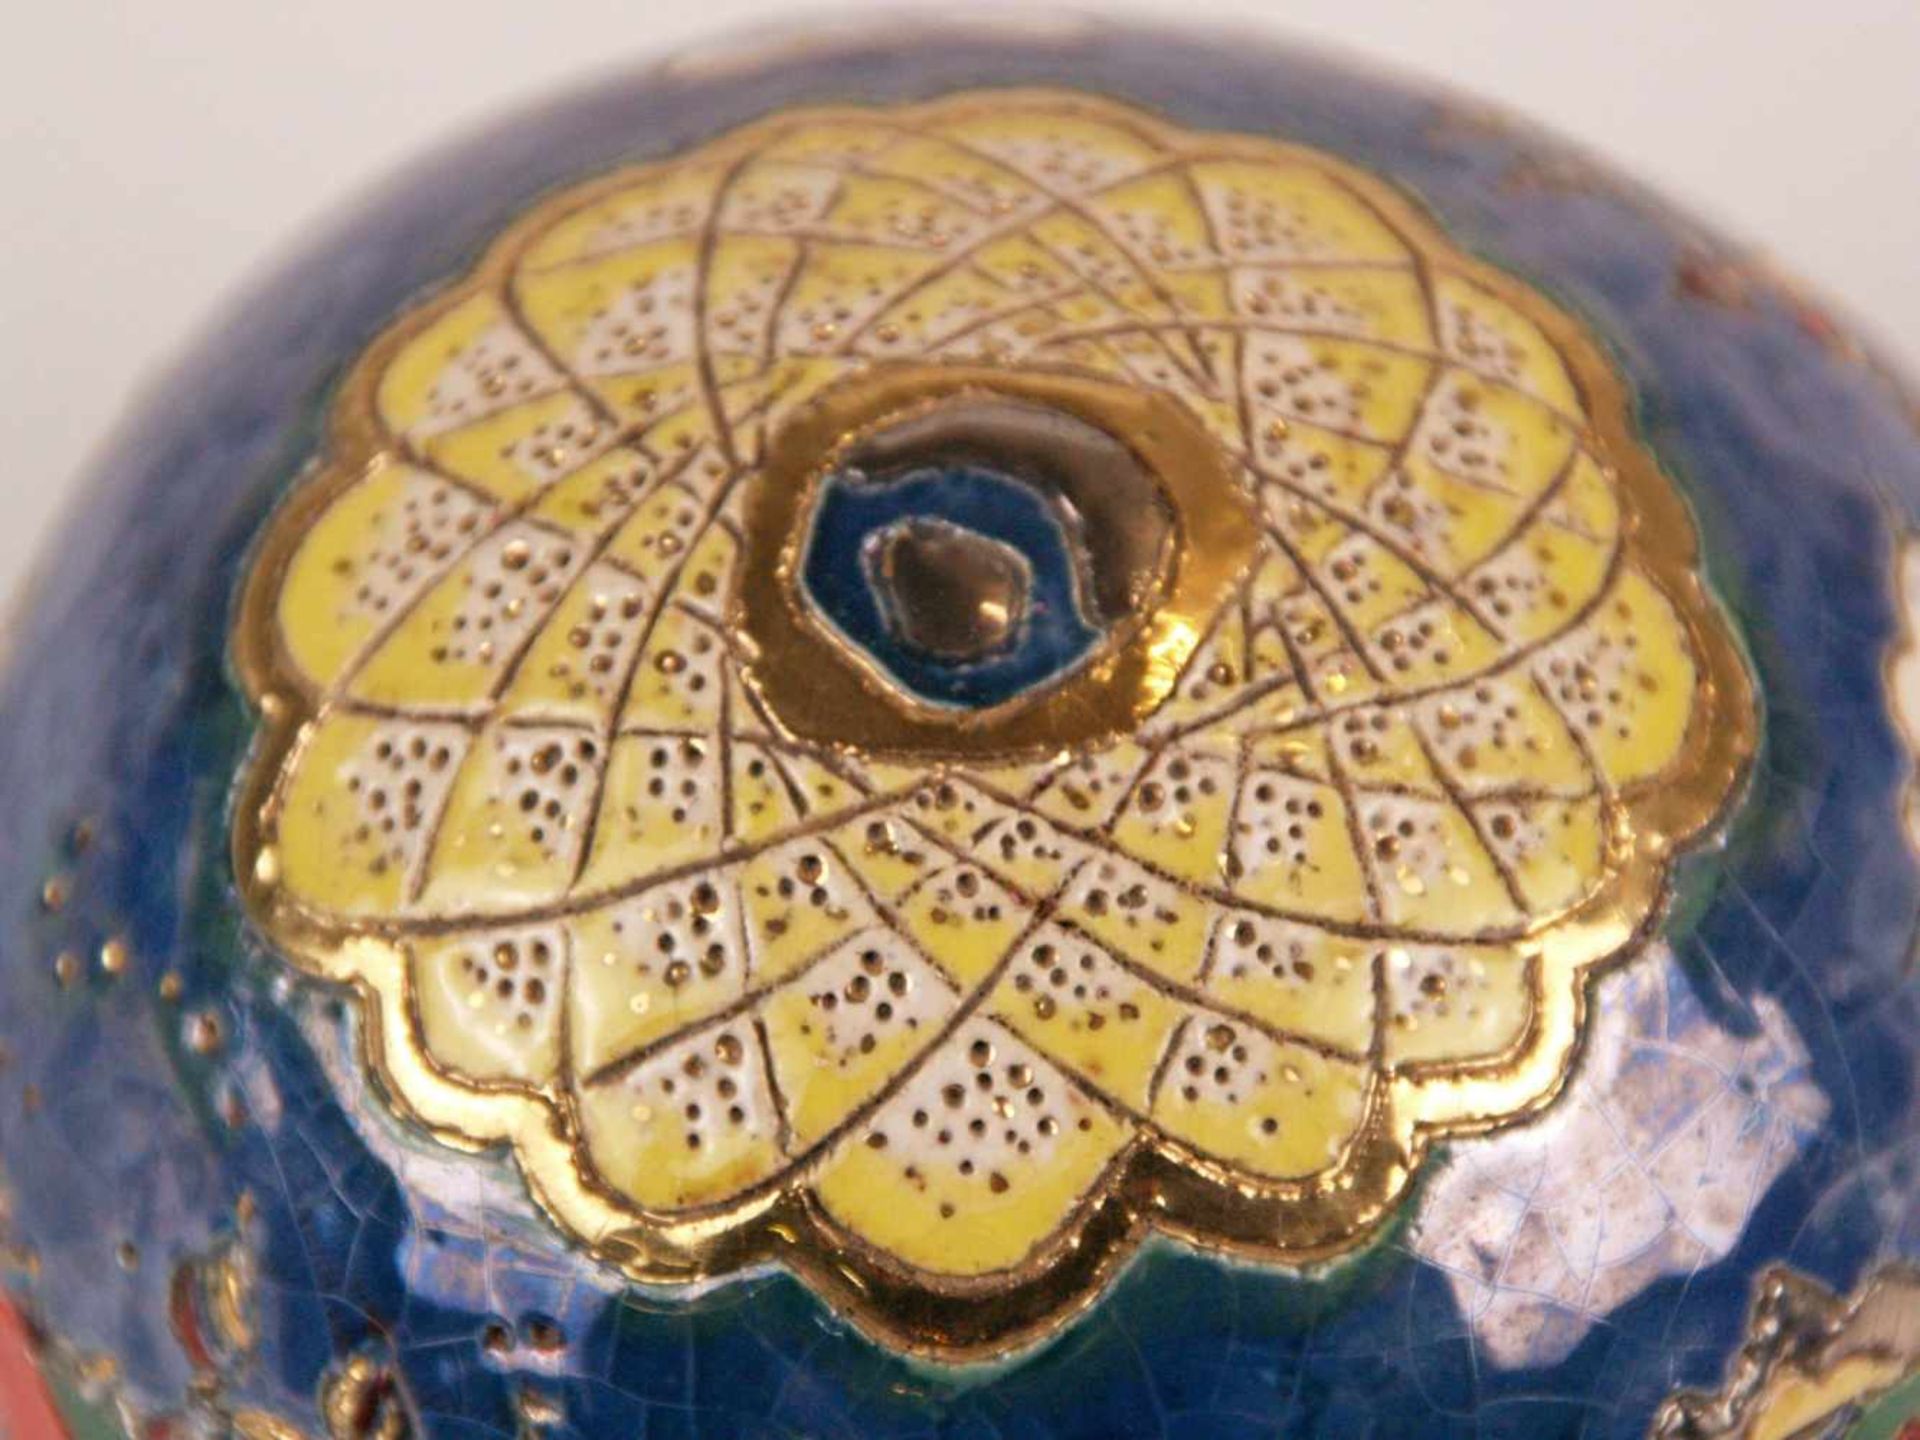 Dubach, Ellen - Kugelobjekt, Keramik, farbig und gold staffiert, emailiert, in krakelierter Optik - Bild 4 aus 5